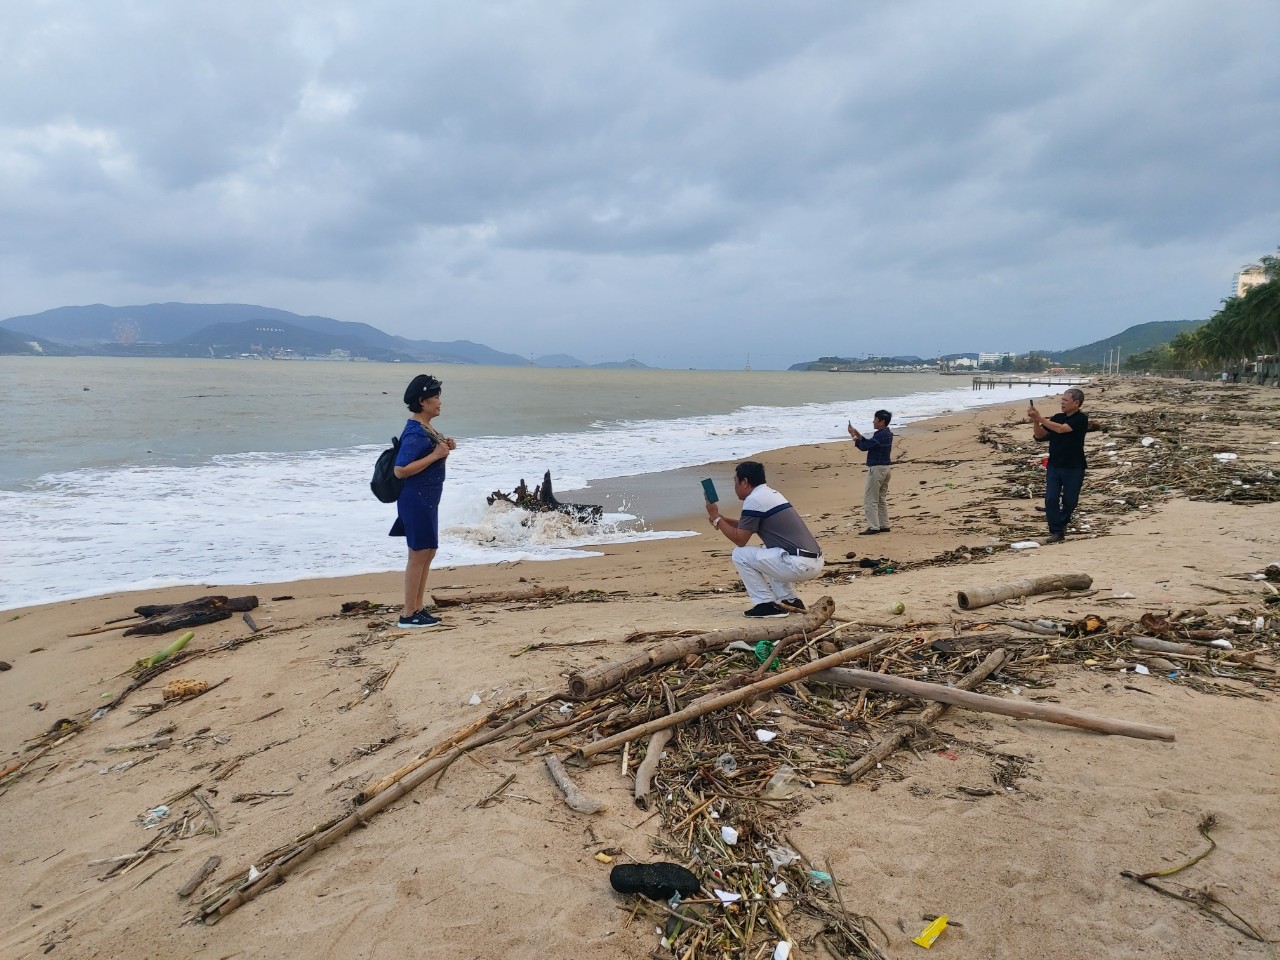 Nhiều du khách dạo chơi trên bãi biển ngập rác.